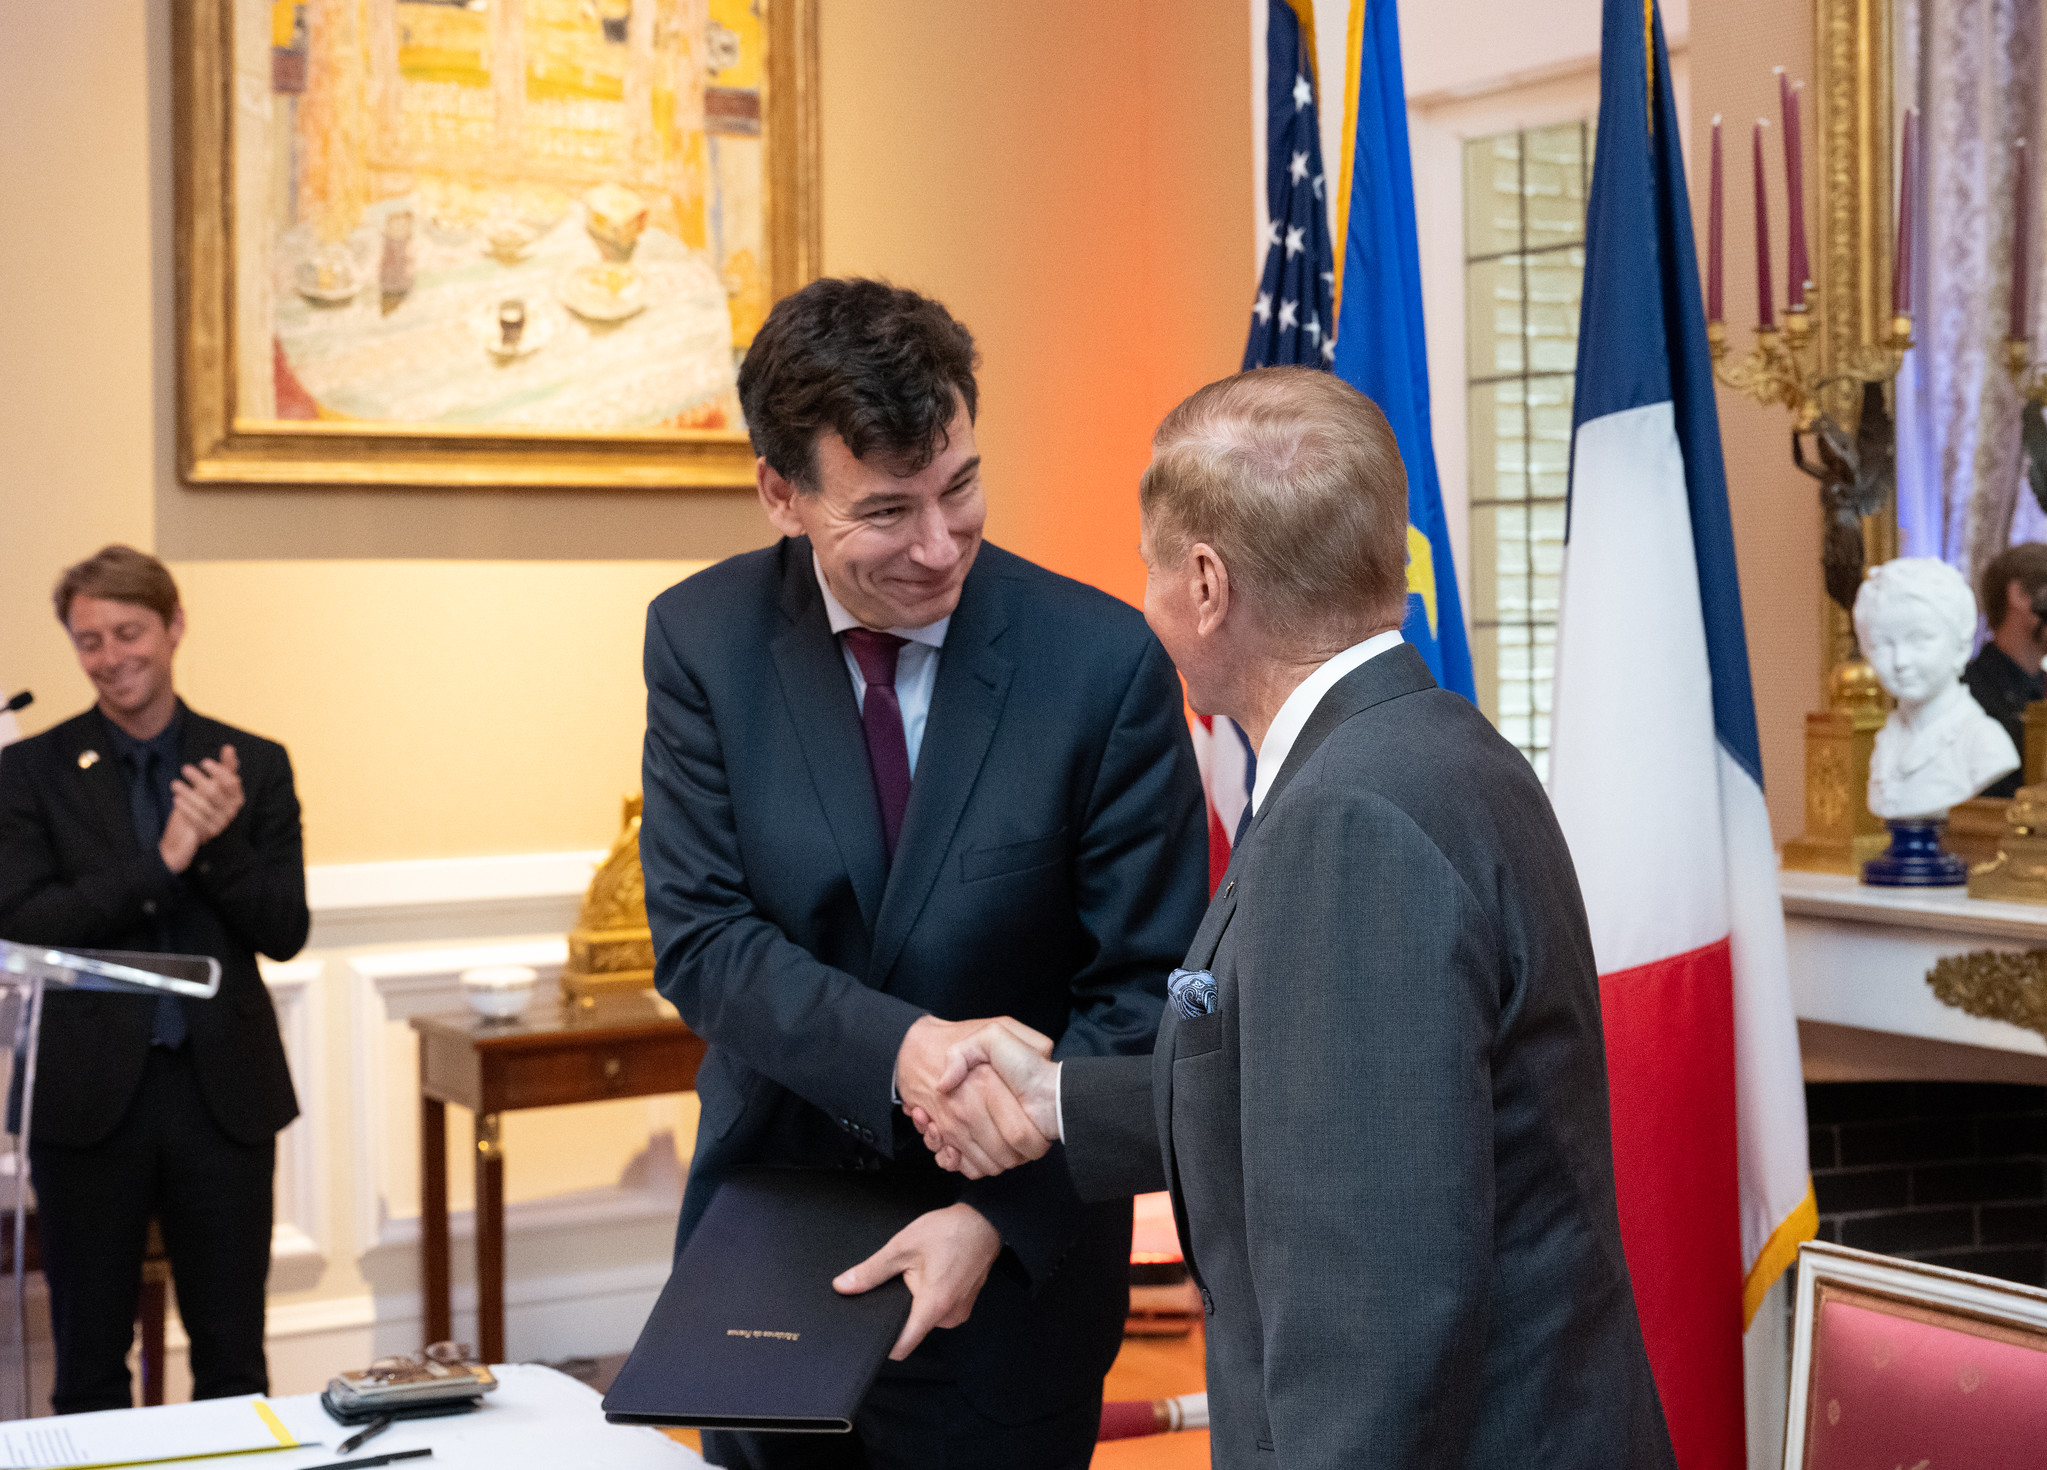 La France s’associe aux « Accords Artemis » et prend part à la coopération internationale pour l’exploration spatiale